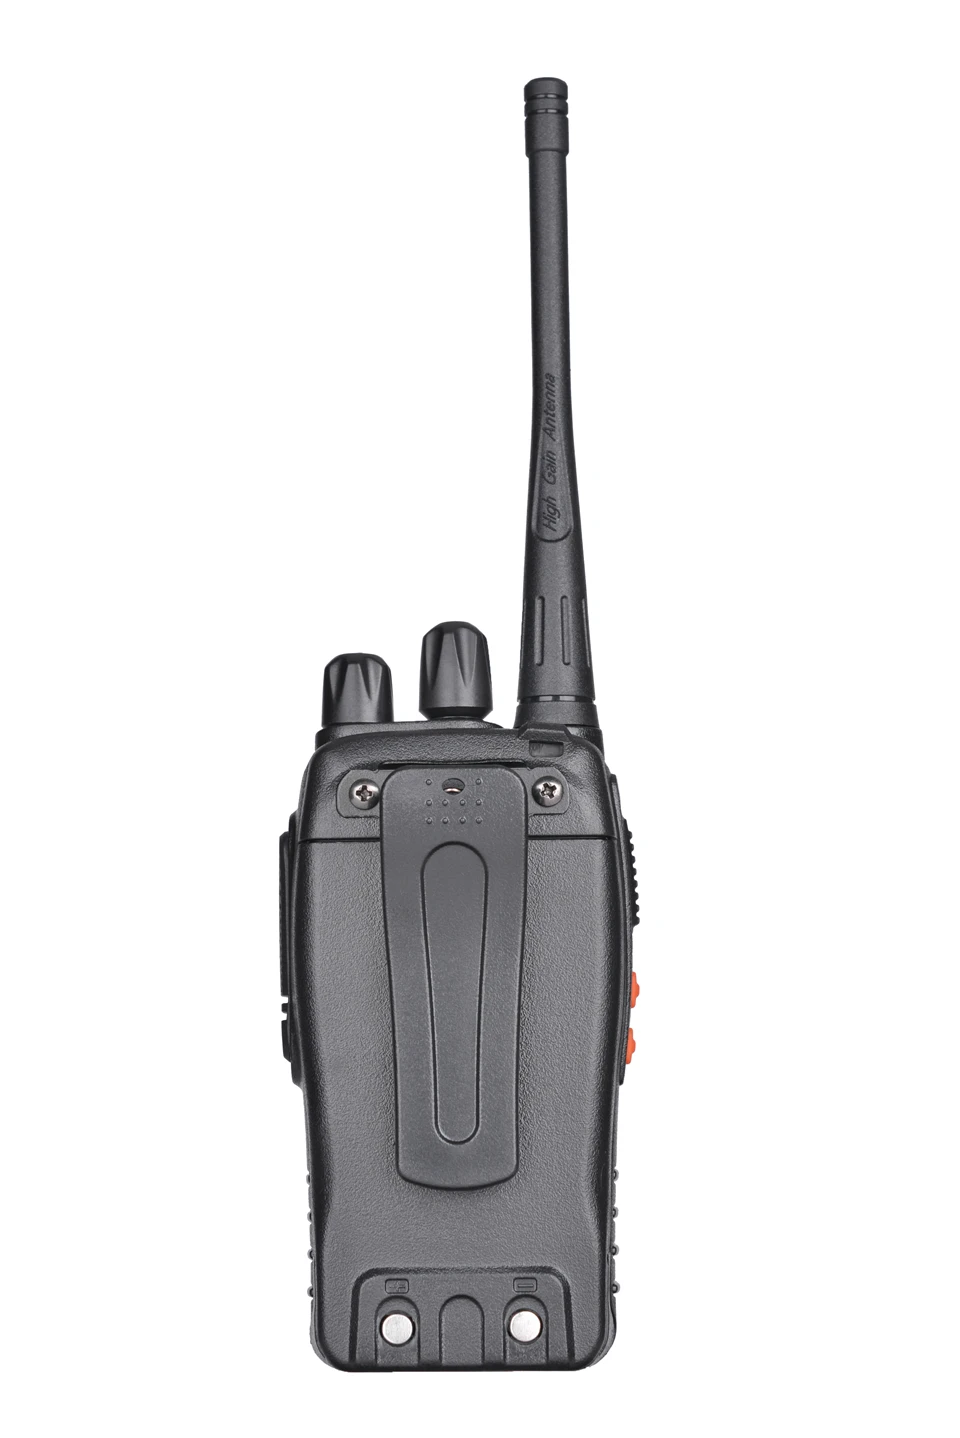 100% Оригинал Baofeng UHF Ручной BF-888s портативная рация 888 S 5 Вт 16CH Портативный walki talki 400-470 мГц двухстороннее радио ФИО Comunicador